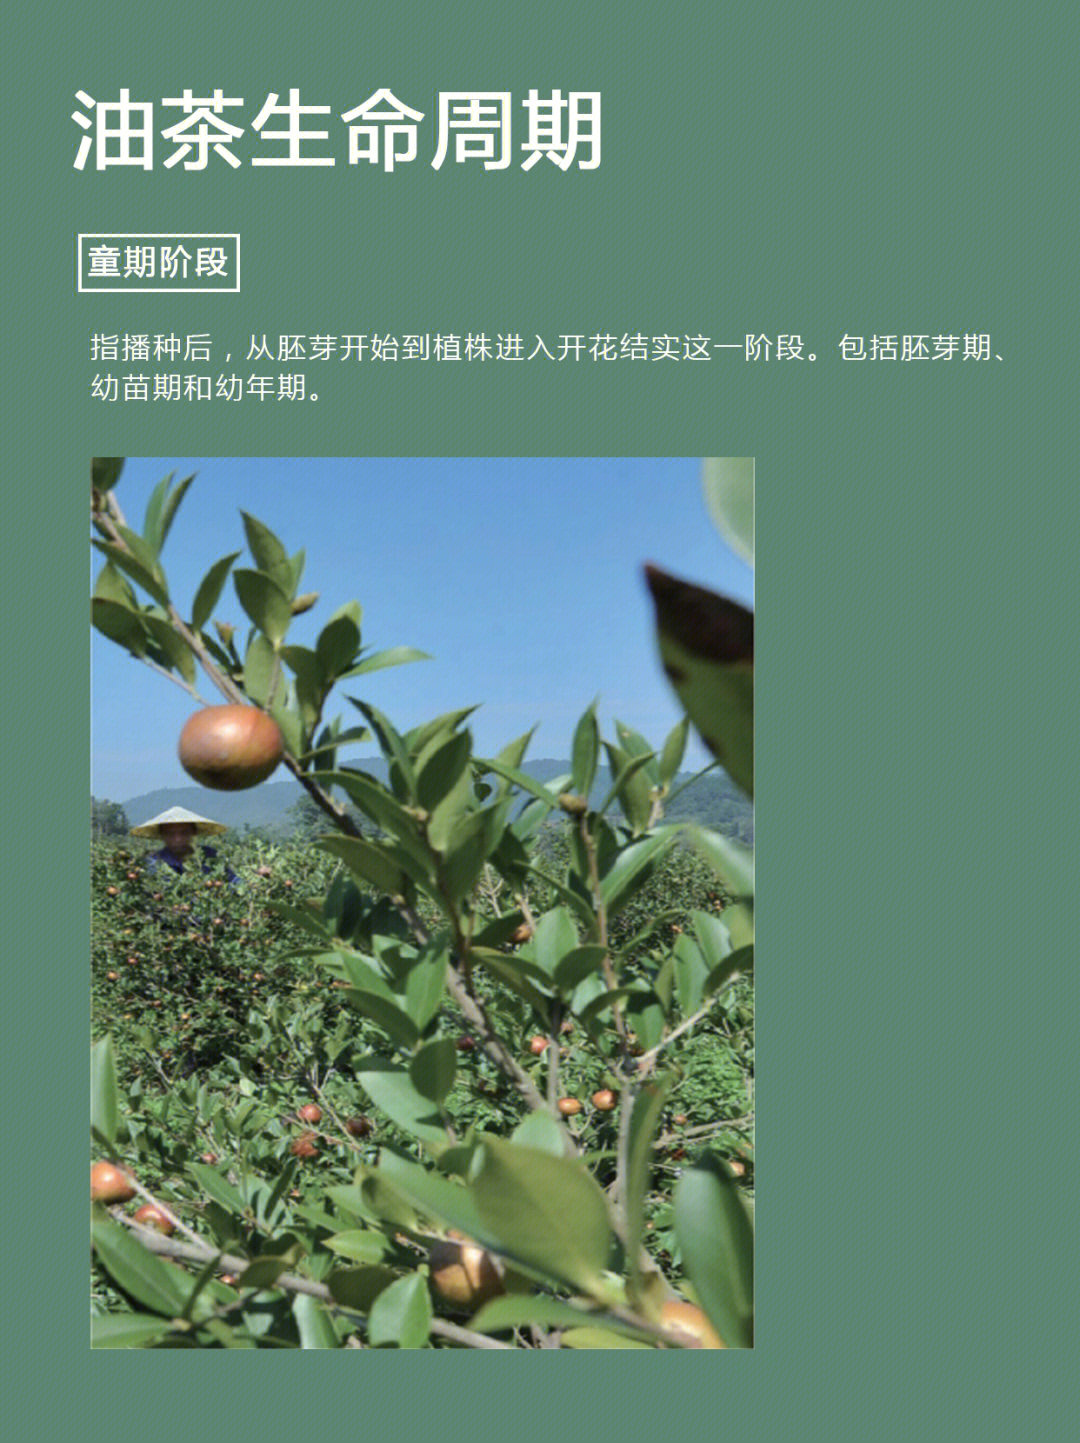 山茶油果树从播种到产果,大约需3—5年,到盛果期需5年以上,产量较低